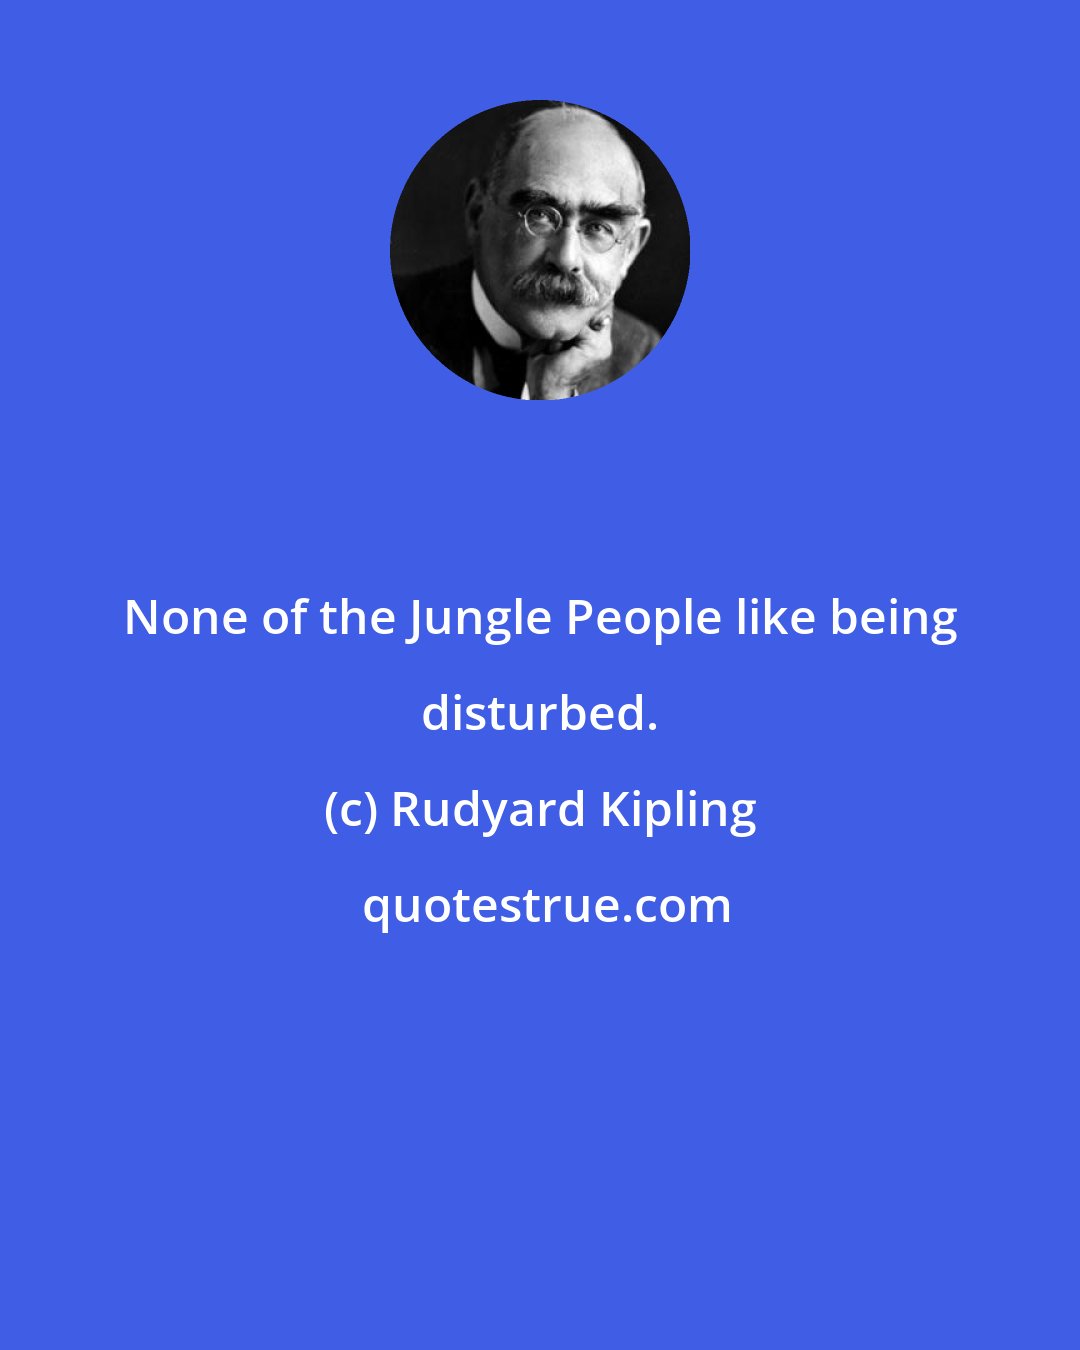 Rudyard Kipling: None of the Jungle People like being disturbed.